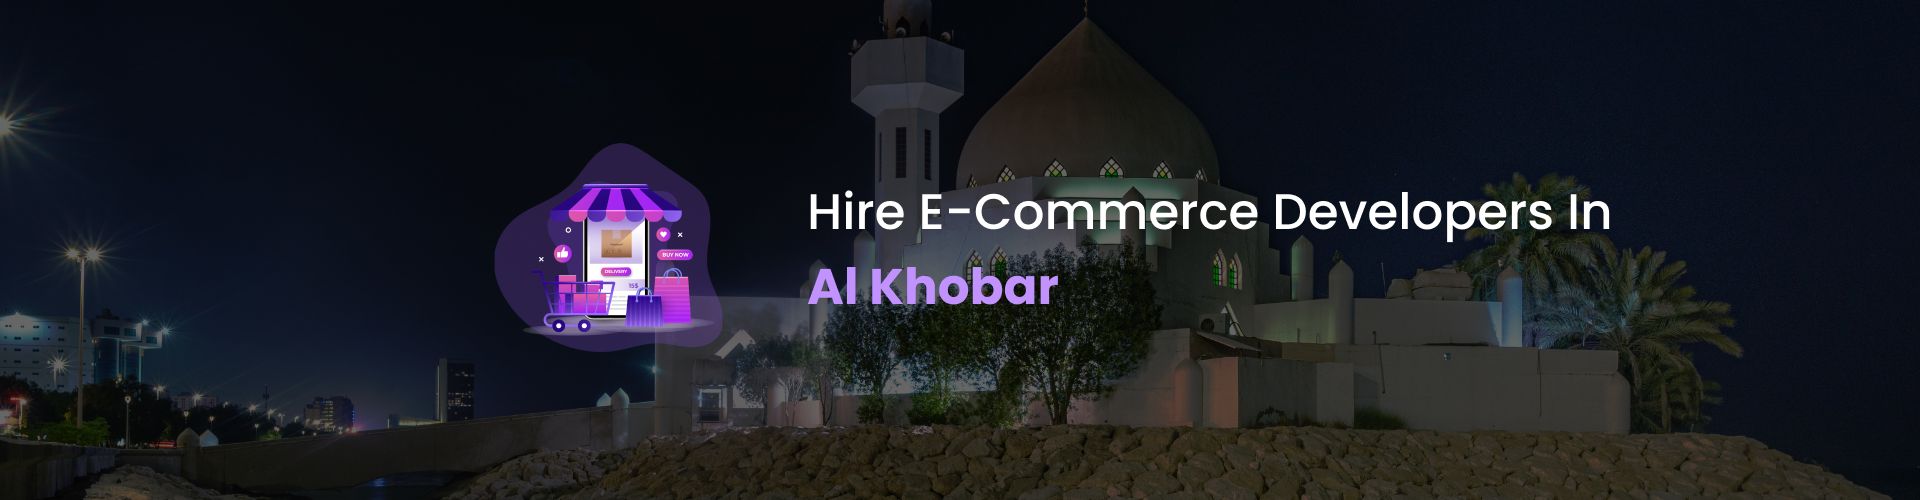 ecommerce developers al khobar